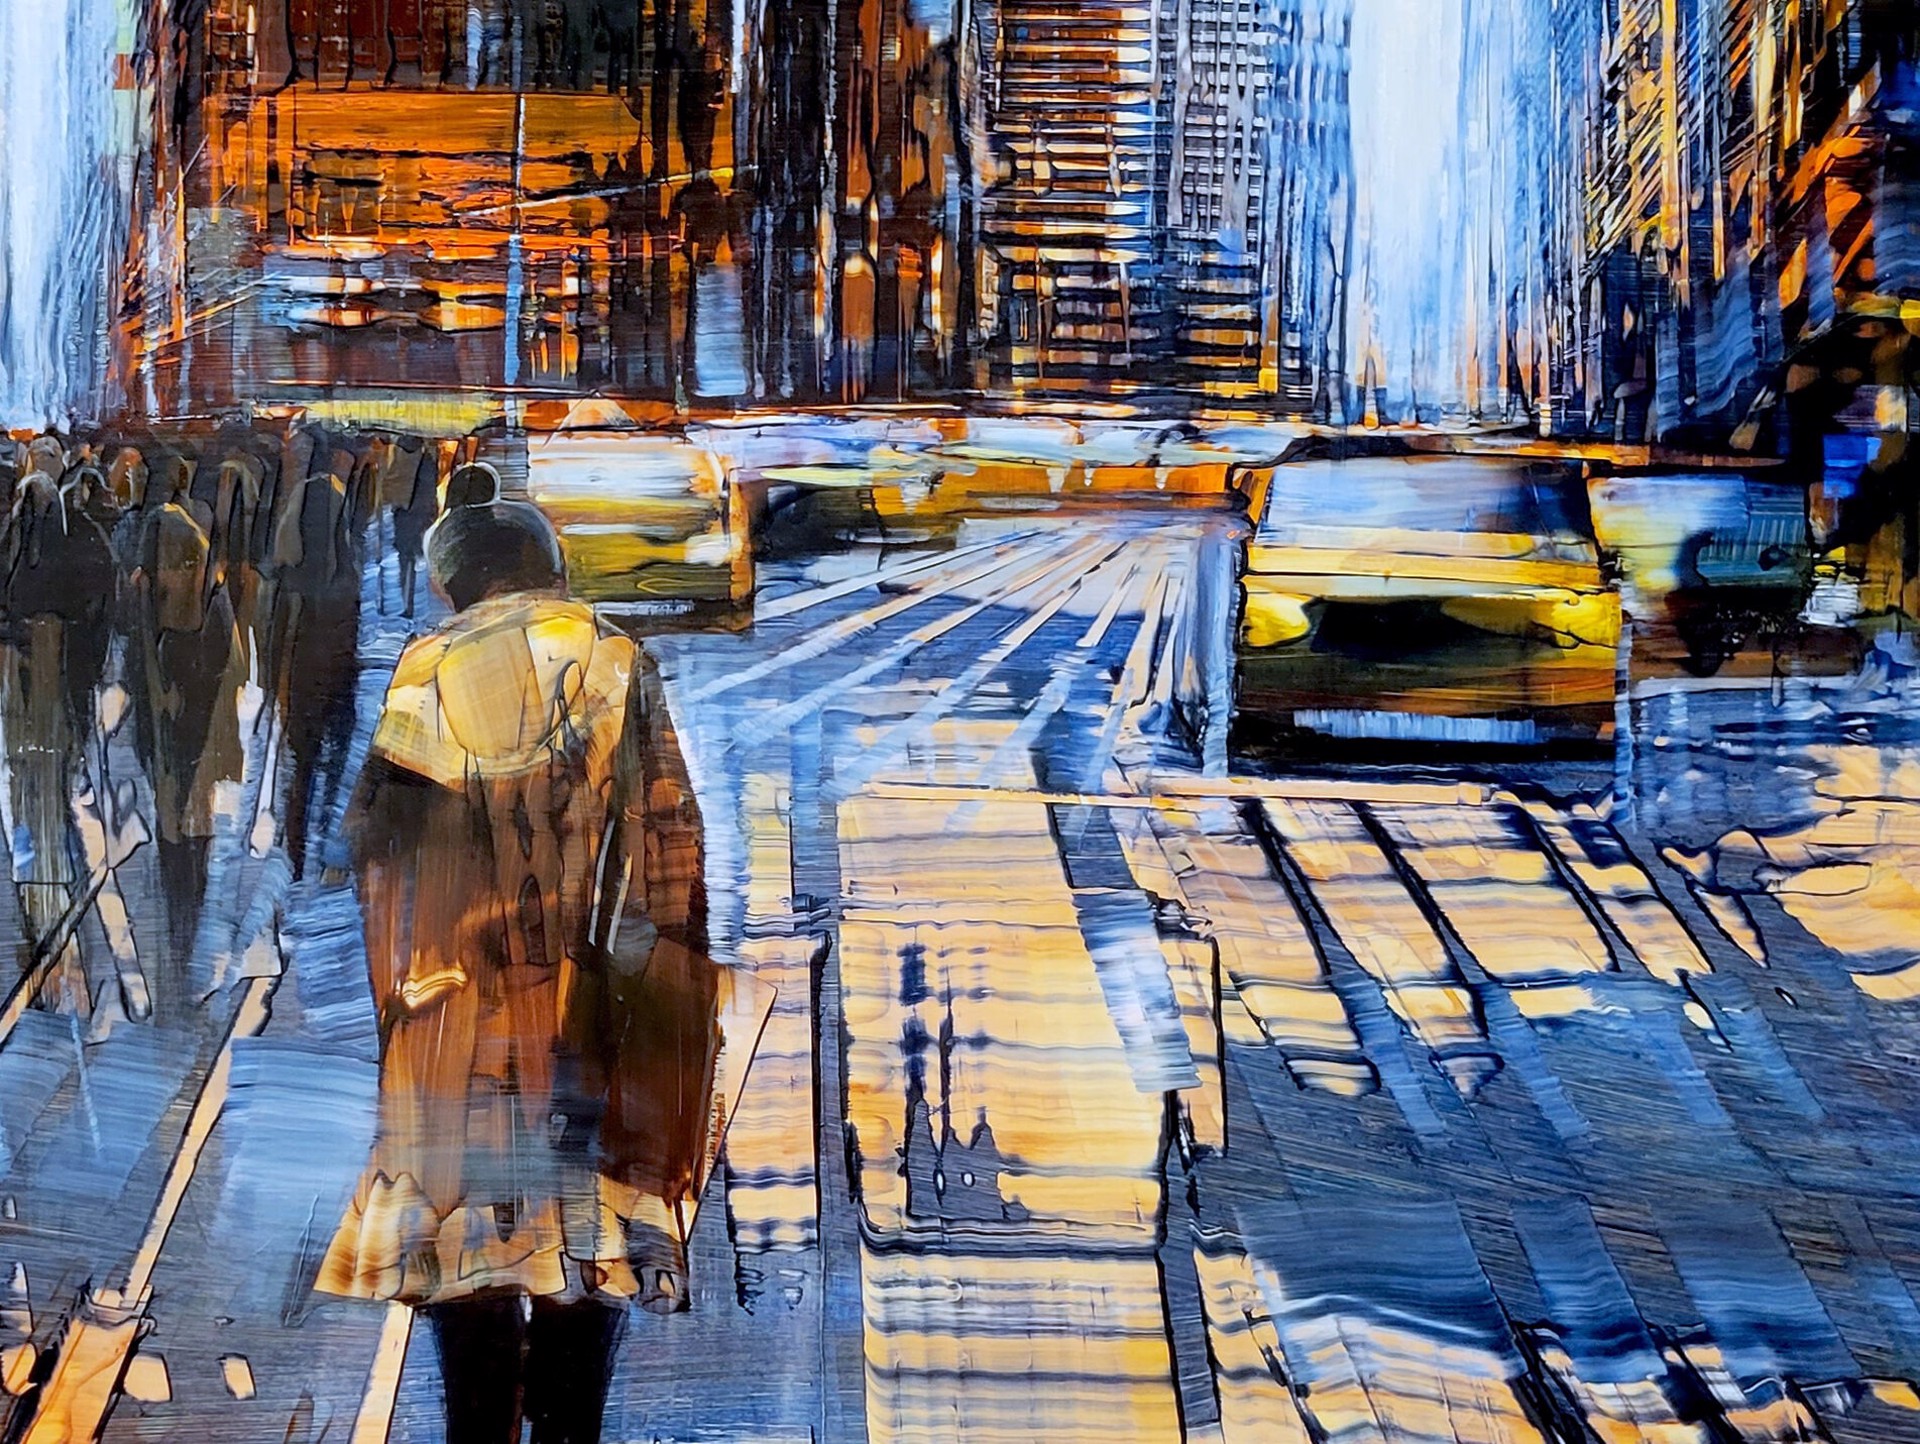 City Evening by David Allen Dunlop